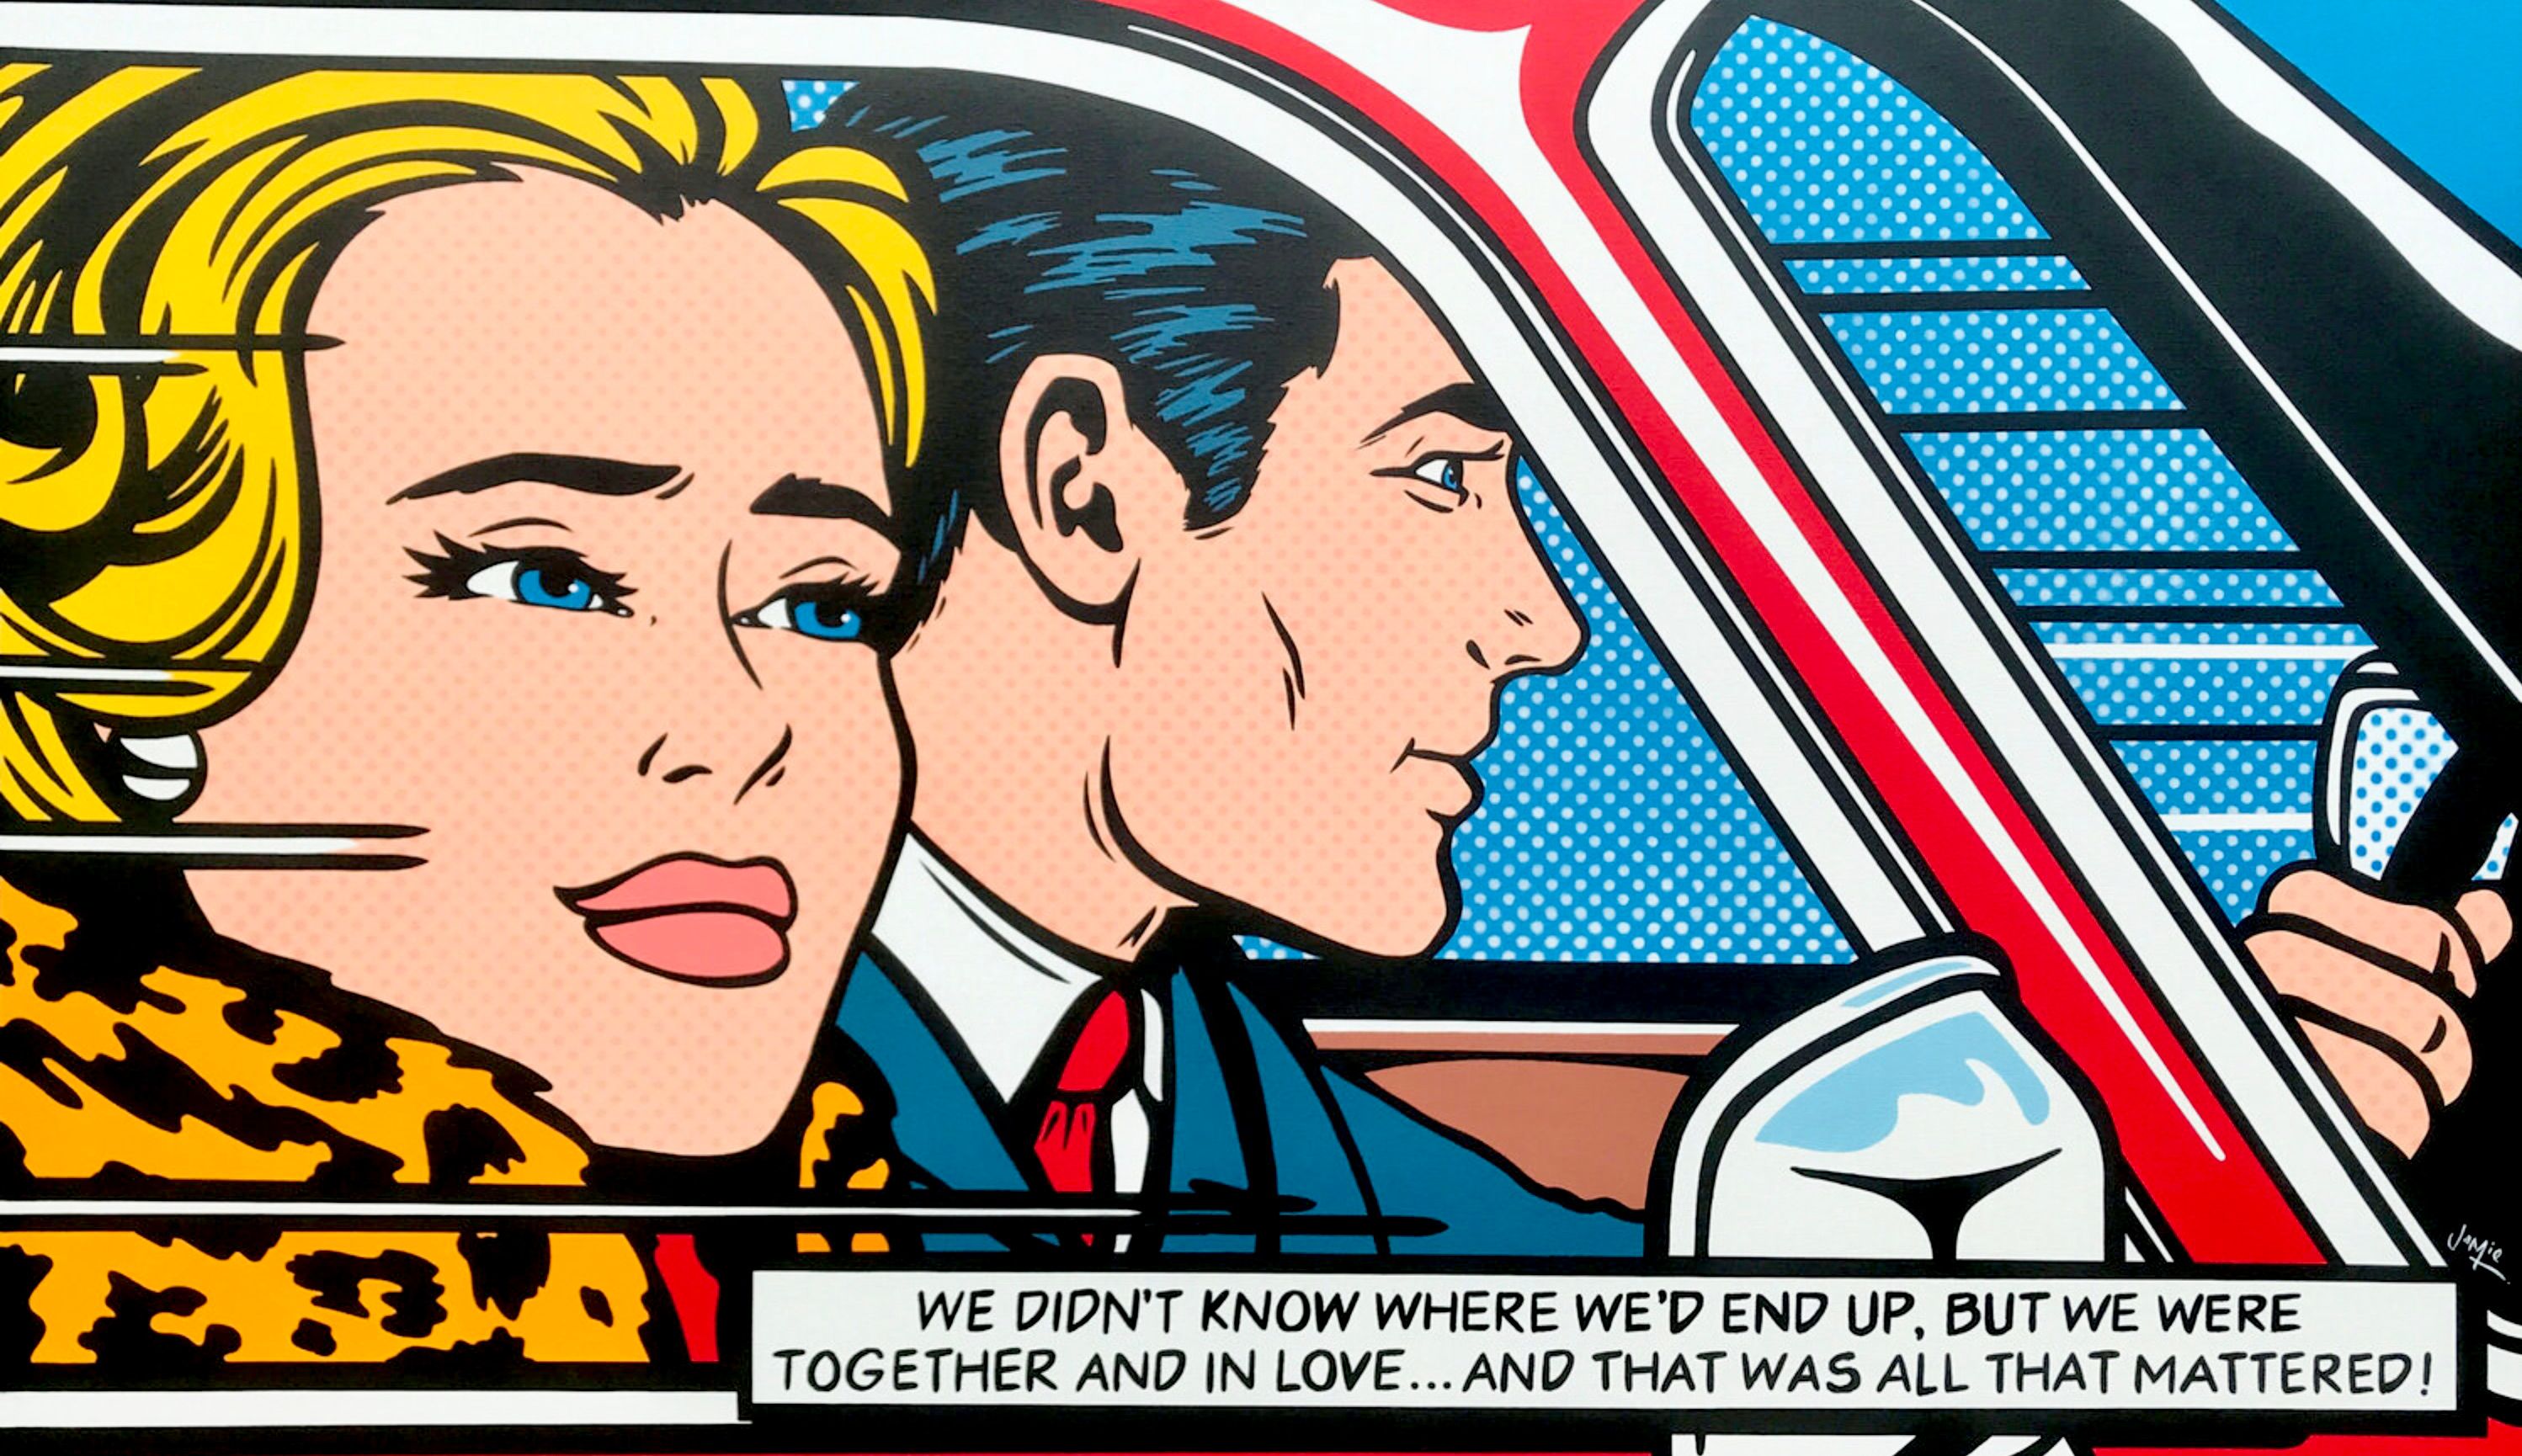 Jamie Lee's "The Adventure" Pop-Art-Gemälde im Comic-Stil mit originellem Design eines jungen Paares. Stellen Sie sich die nächste Szene nach Lichtensteins Gemälde „Im Auto“ vor. Ursprüngliche Pop-Art-Malerei im Comic-Stil eines jungen verliebten Paares, das auf eine Autoreise geht.